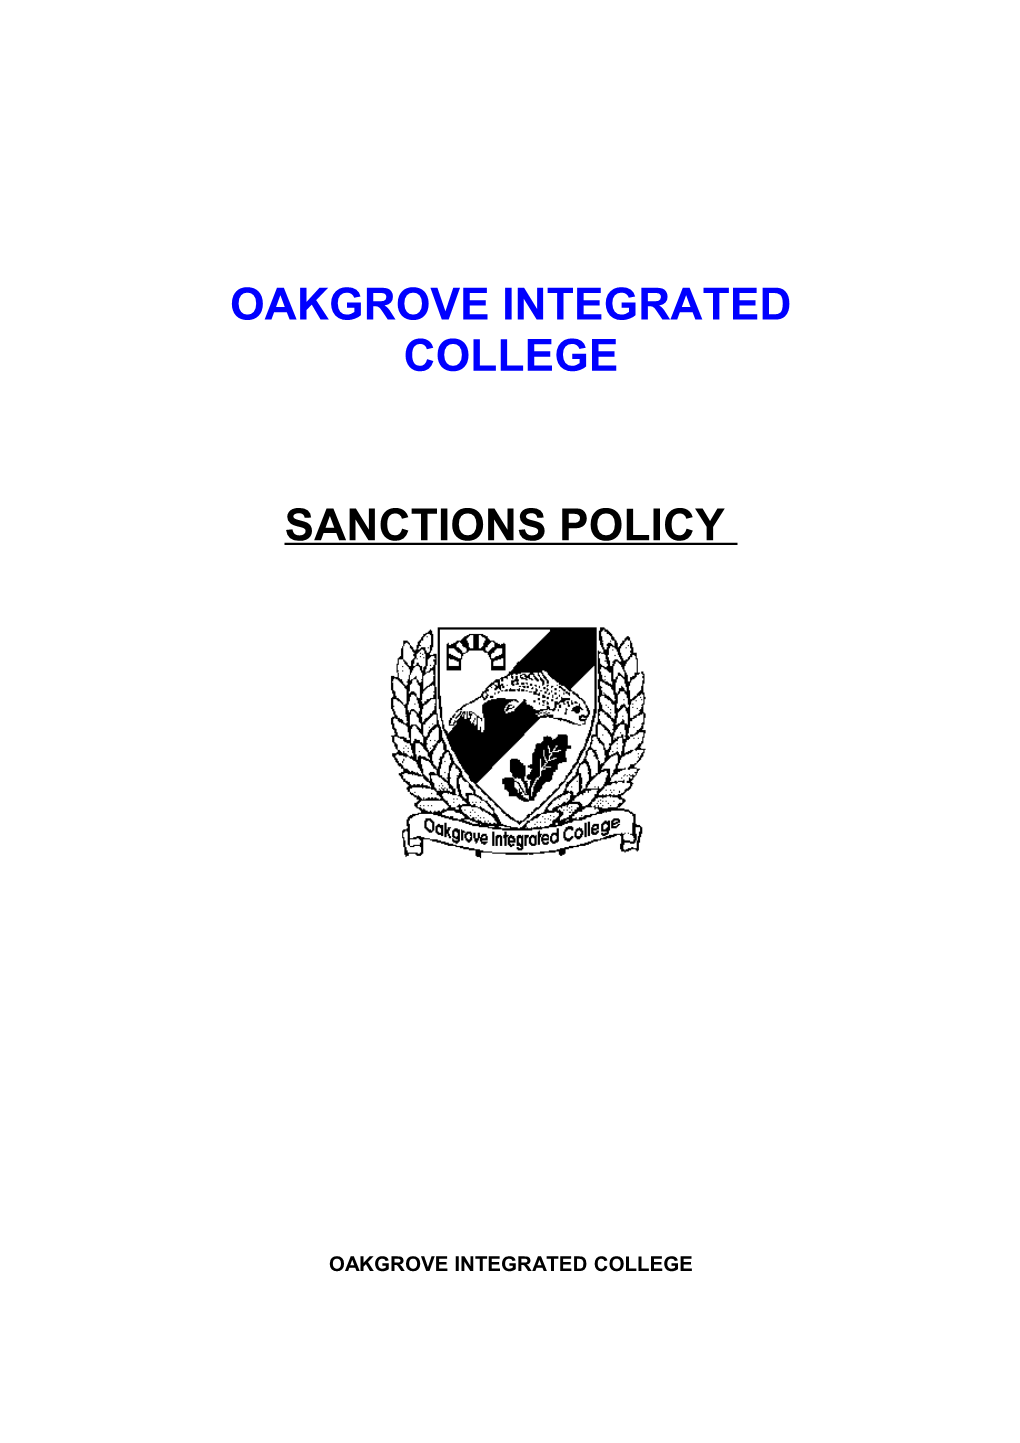 Oakgrove Integrated